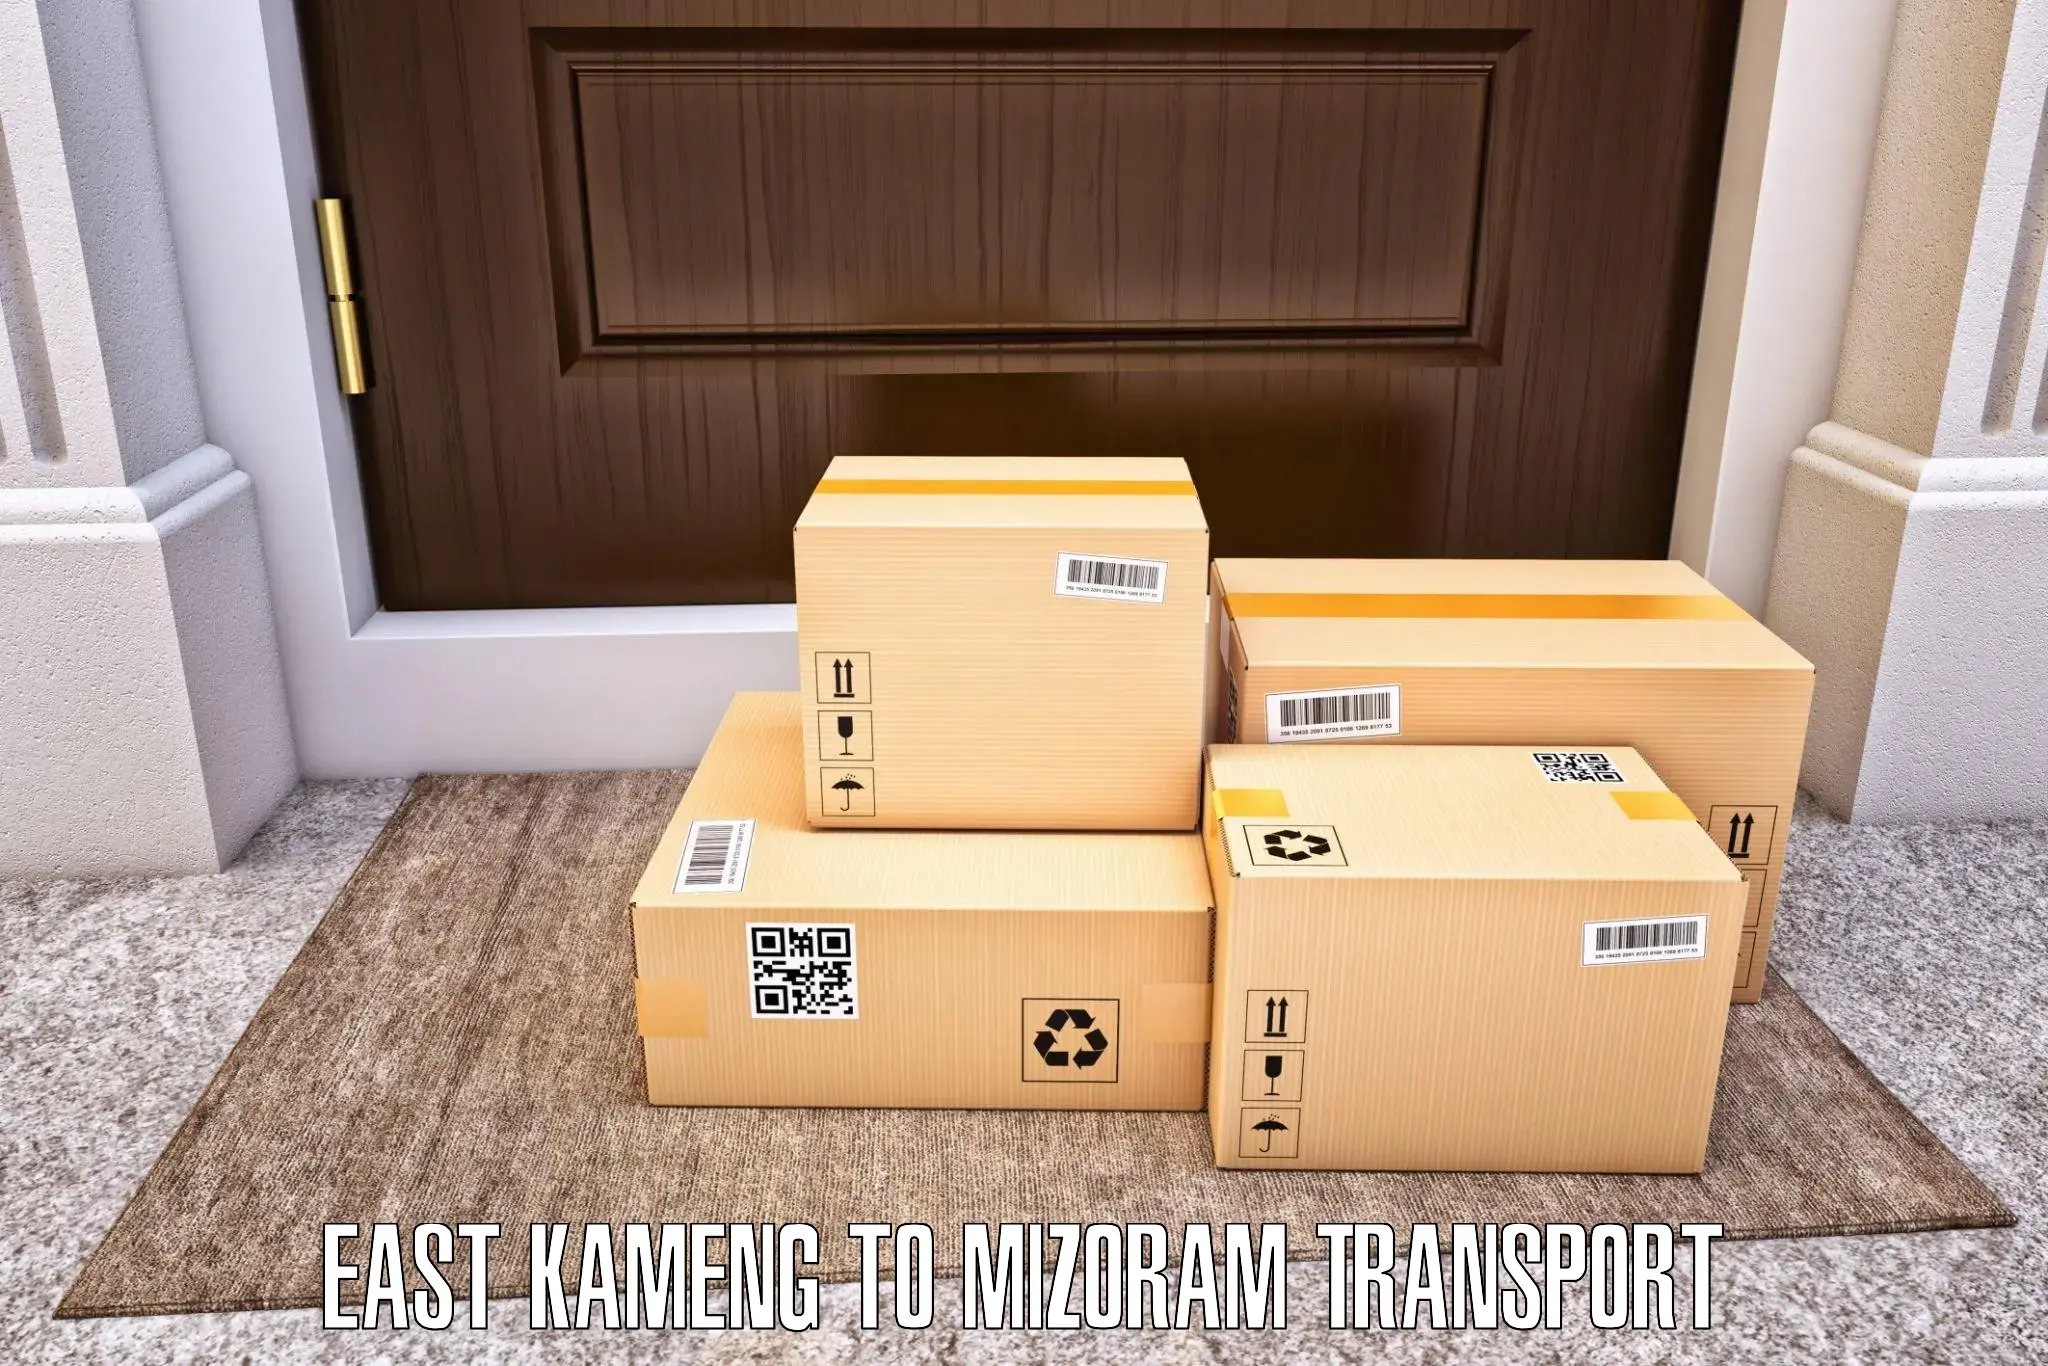 Vehicle parcel service East Kameng to Mizoram